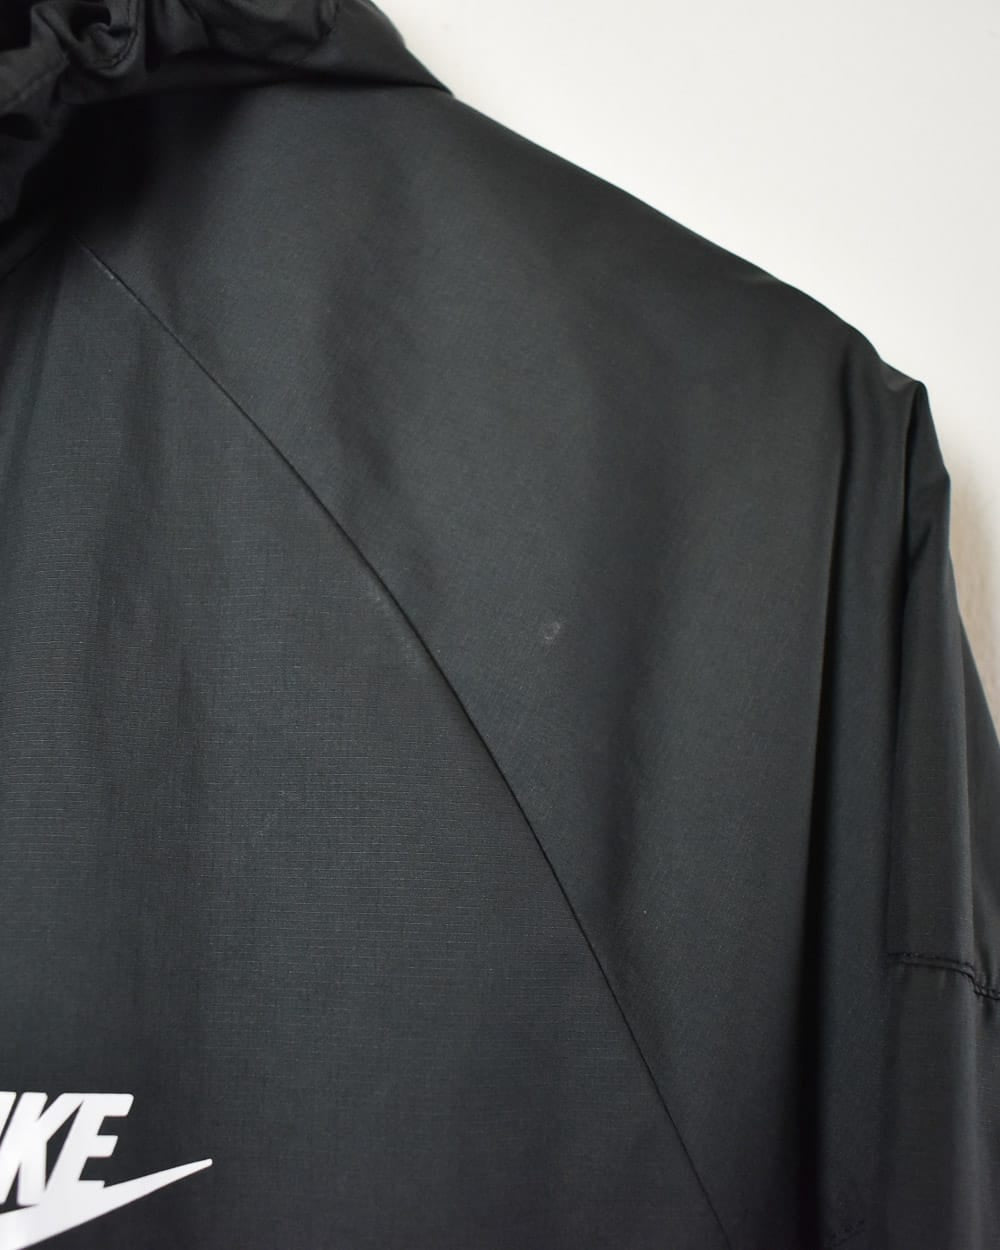 Black Nike Hooded Windbreaker Jacket - Medium